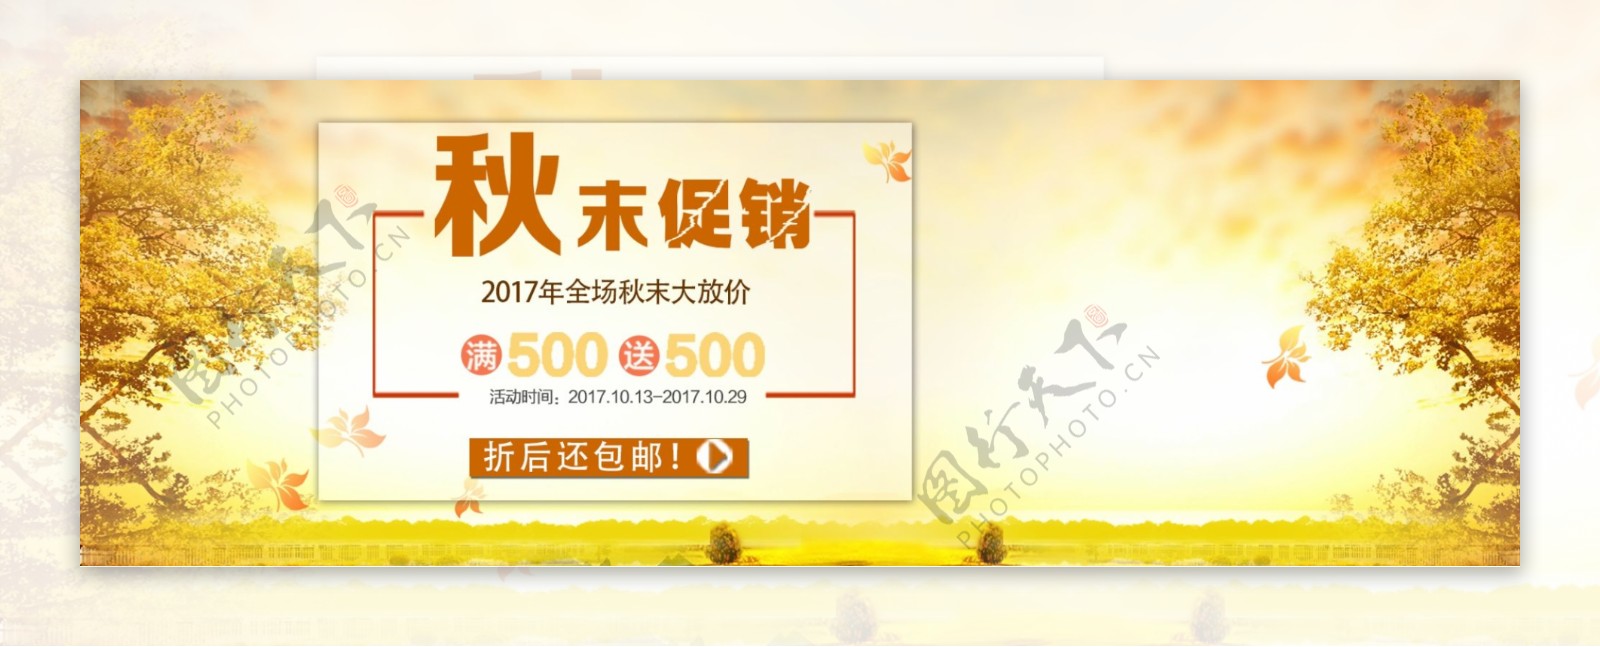 温馨黄色银杏树背景秋末促销满减电商海报banner